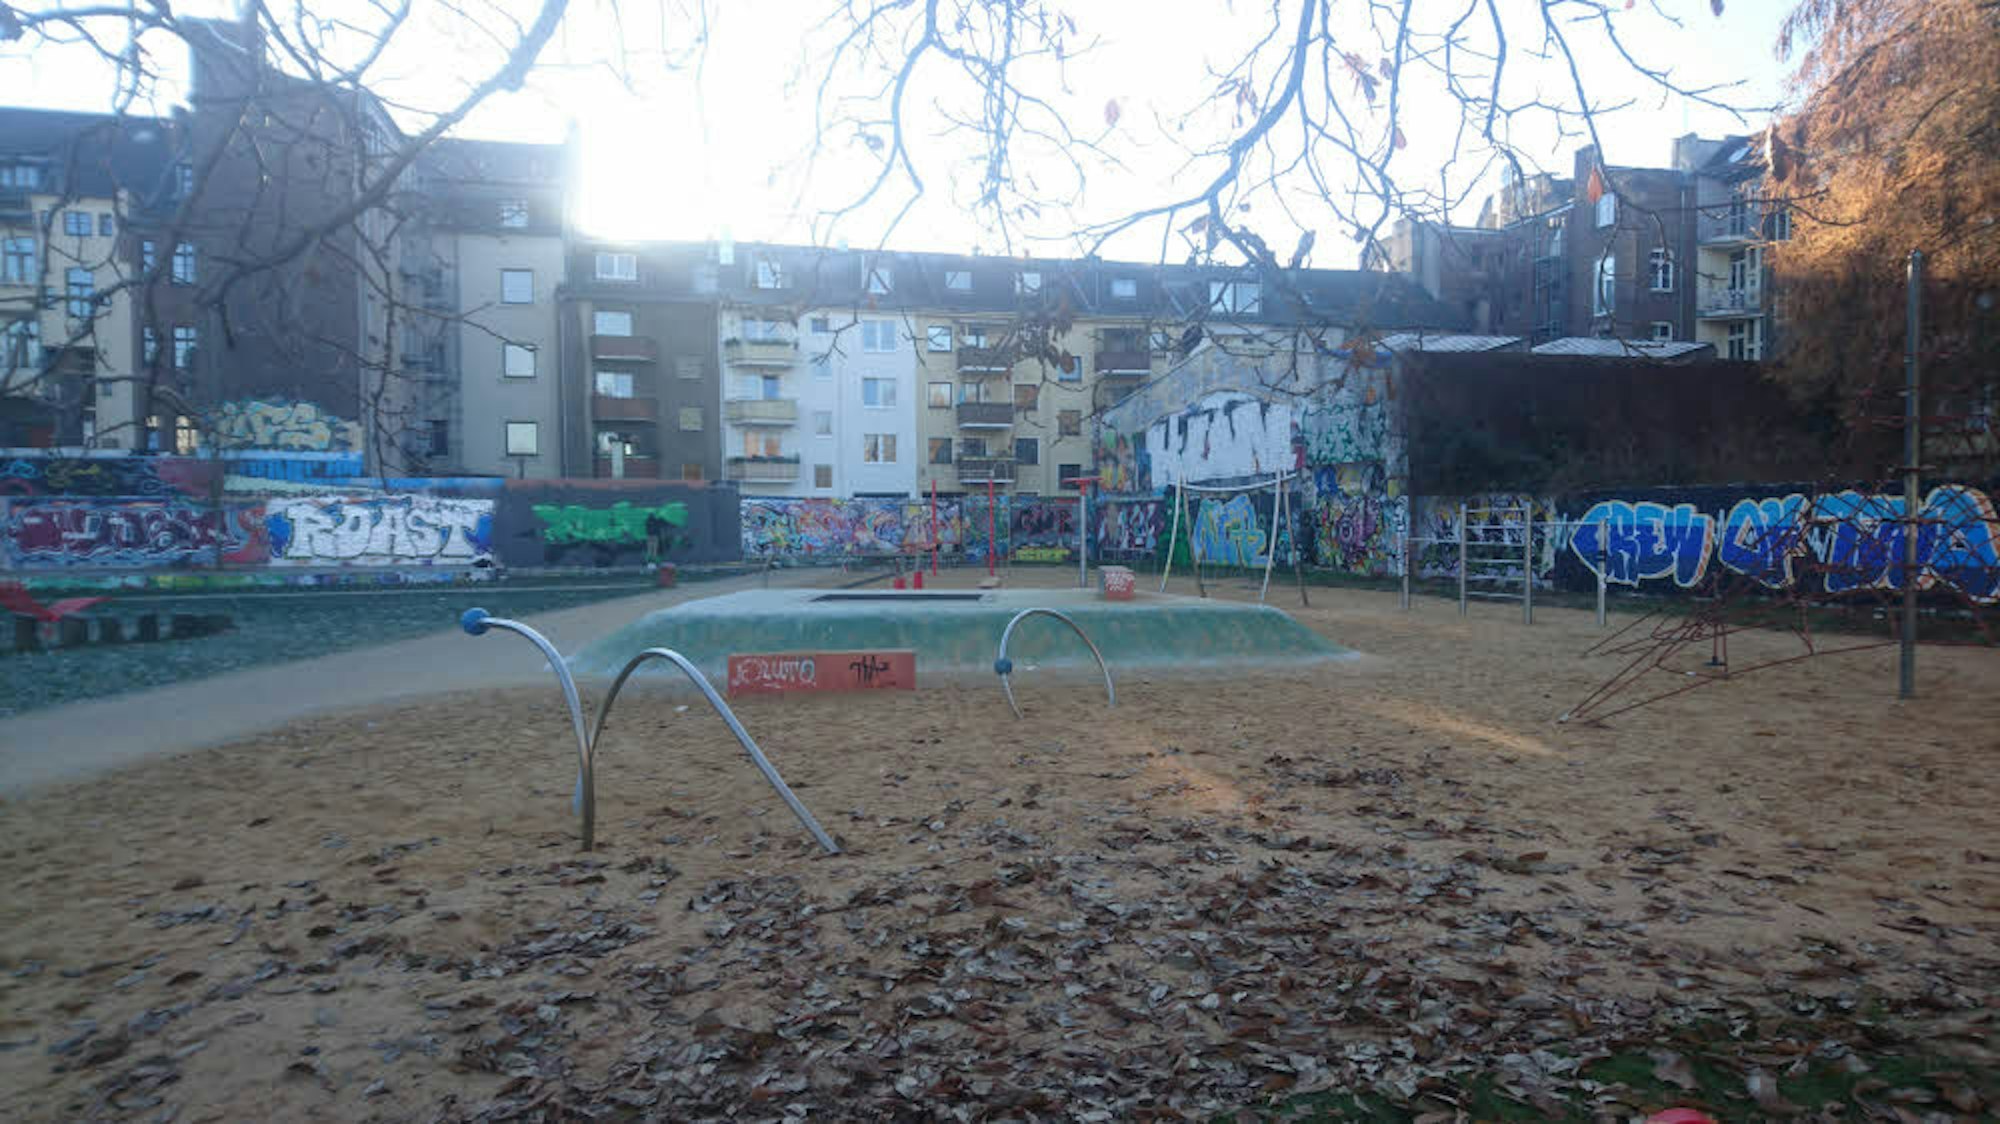 Sandkasten, Spielgeräte und jede Menge Graffiti: Der Bürgerpark an der Berliner Straße